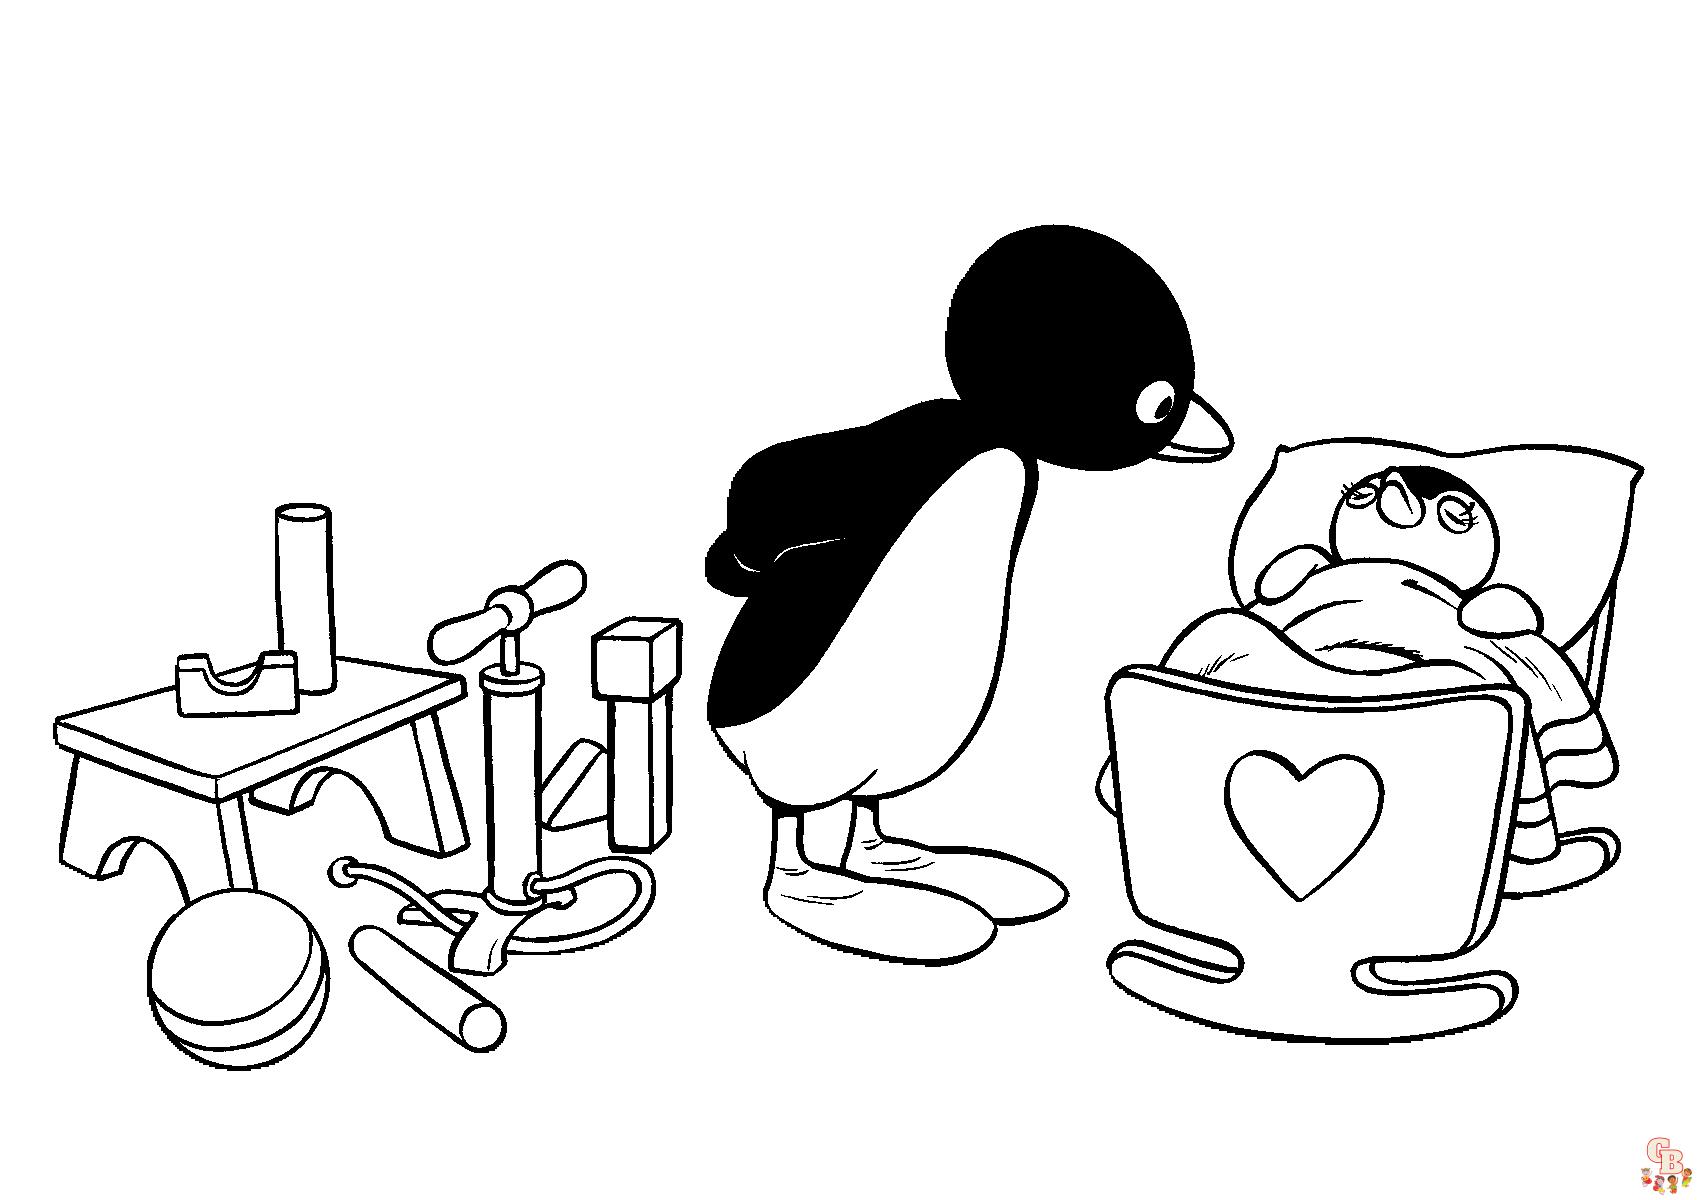 Desenho de Pingu para colorir